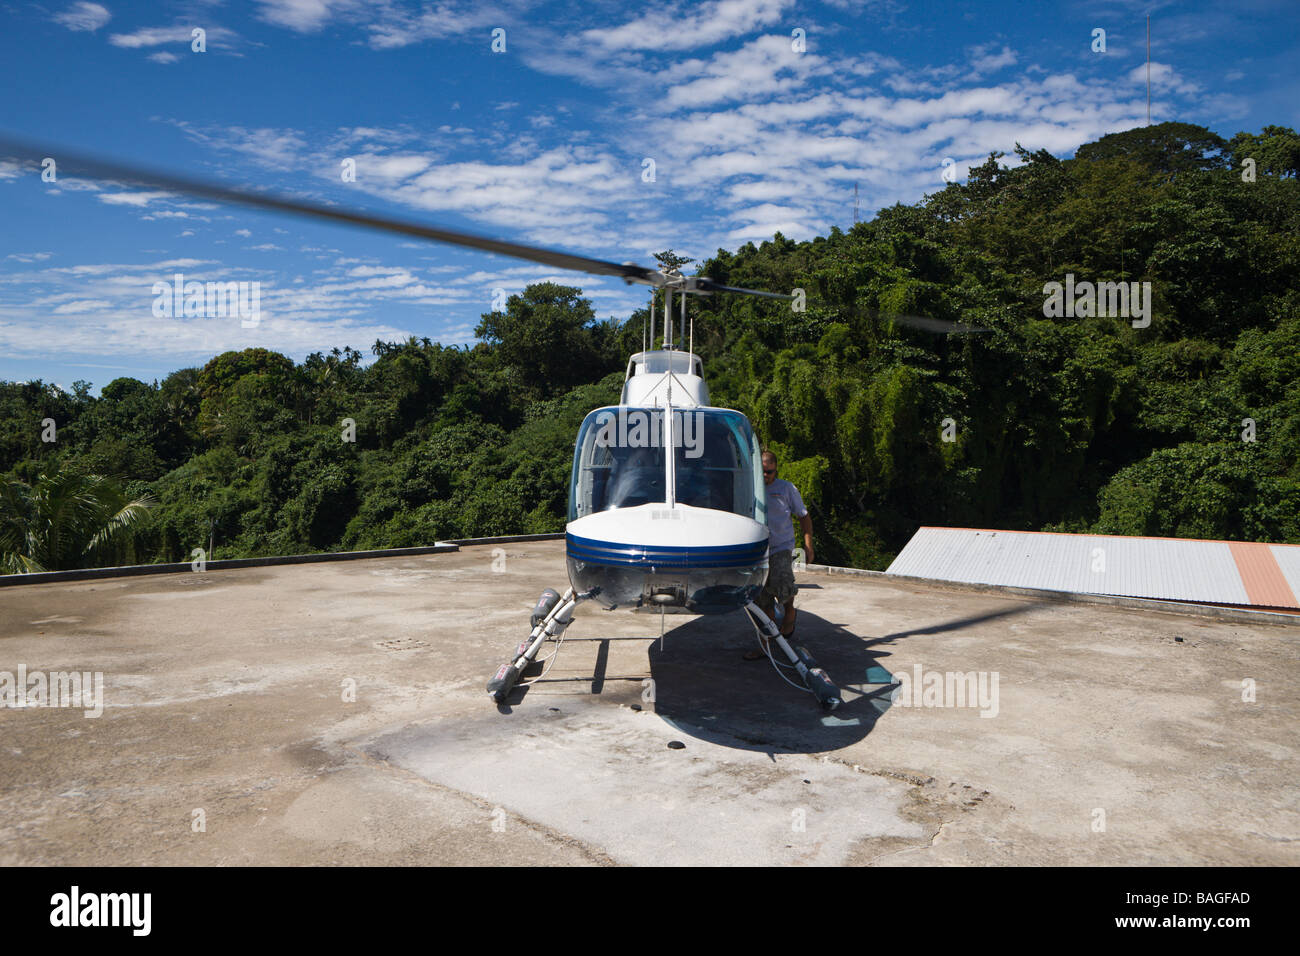 Hubschrauber bieten Flüge über Palau Inseln Mikronesien Palau Stockfoto